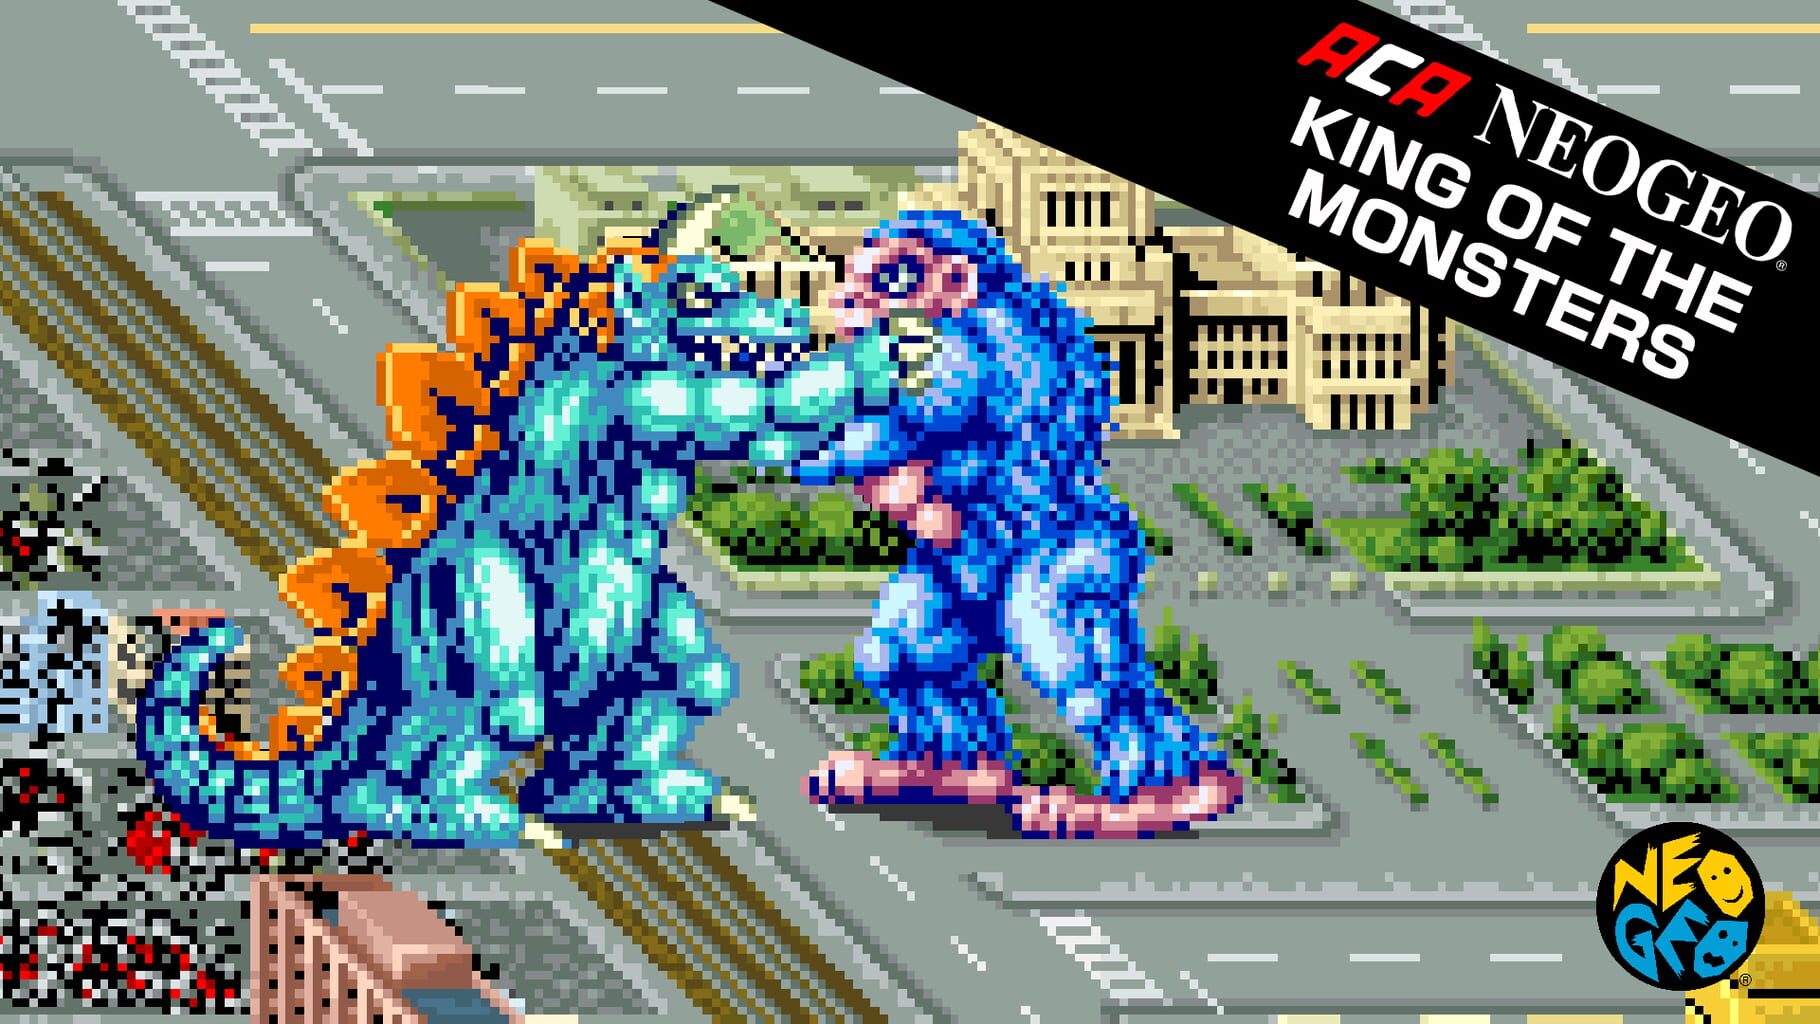 Arte - ACA Neo Geo: King of the Monsters